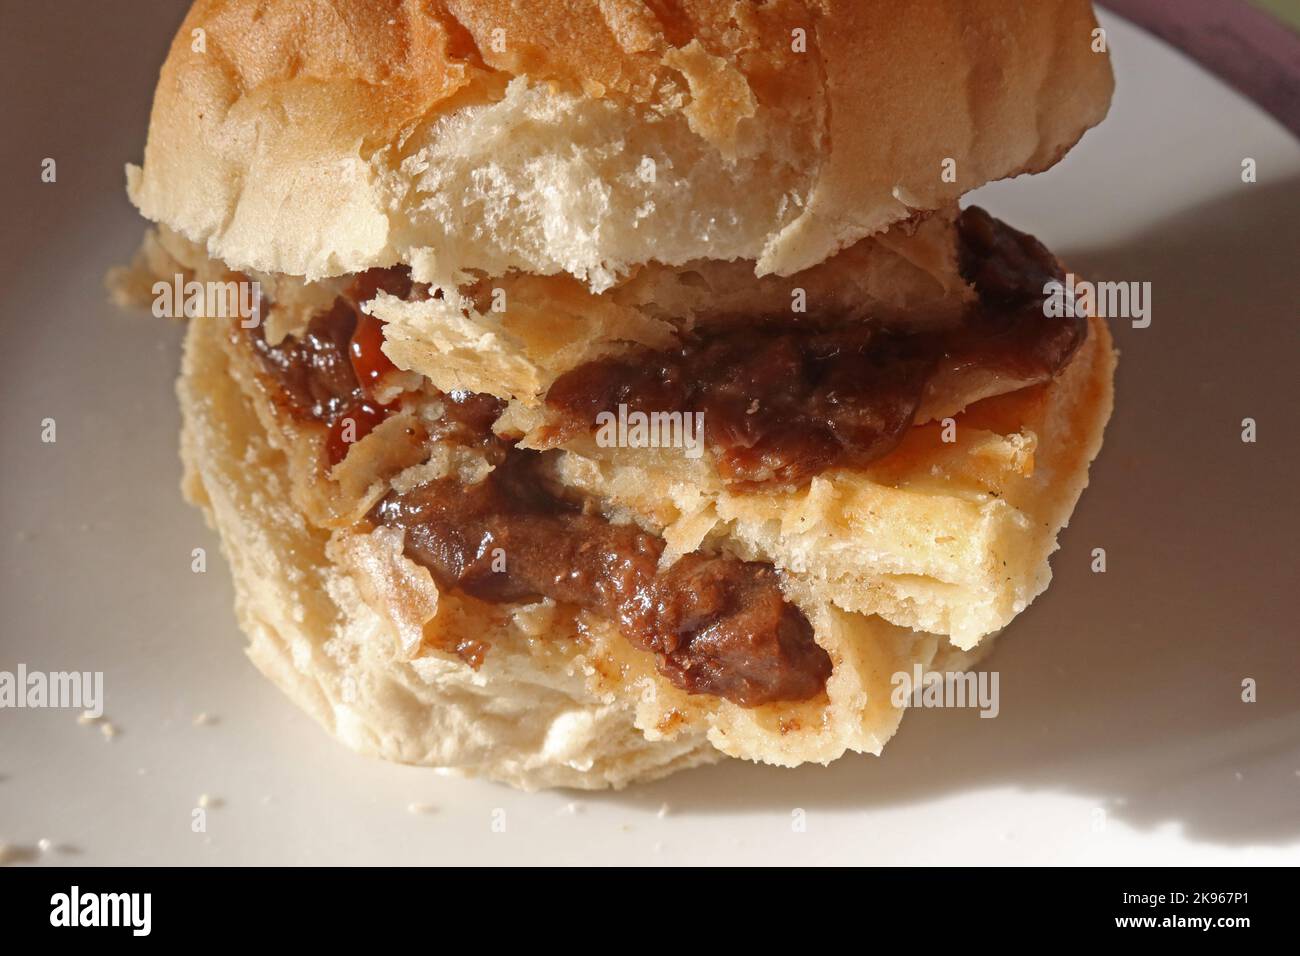 Wigan Lancashire Pie Burger, ein Steak- oder Fleischkuchen auf einem Muffin im Ofen Stockfoto